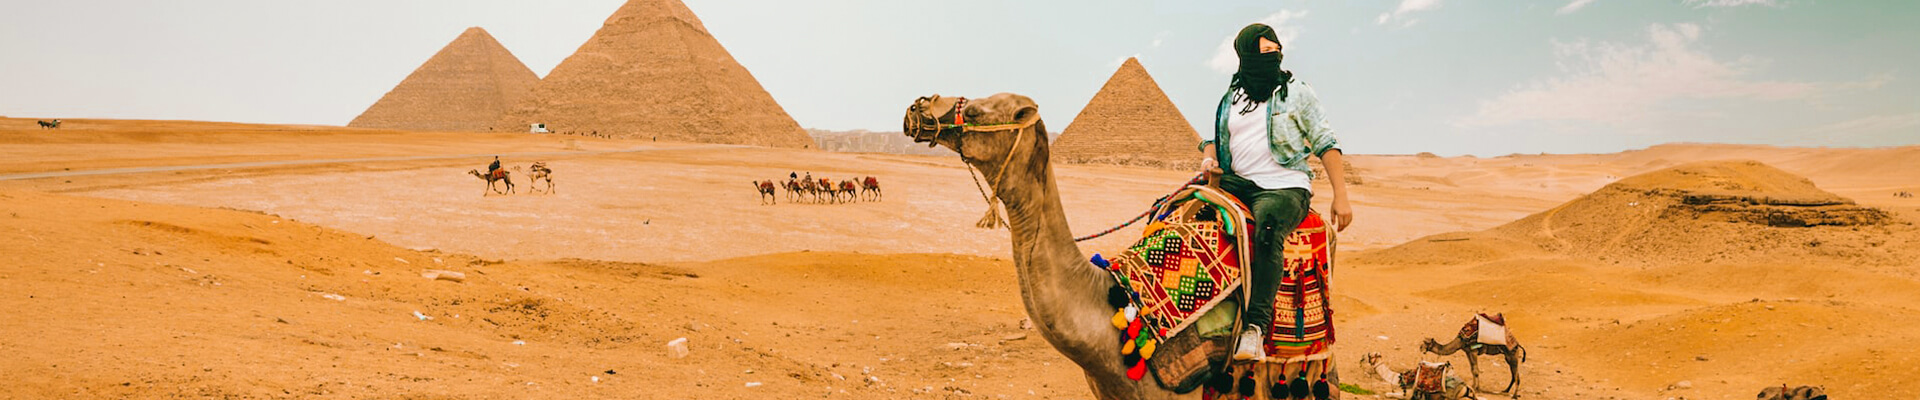 Egypt Solo Tours